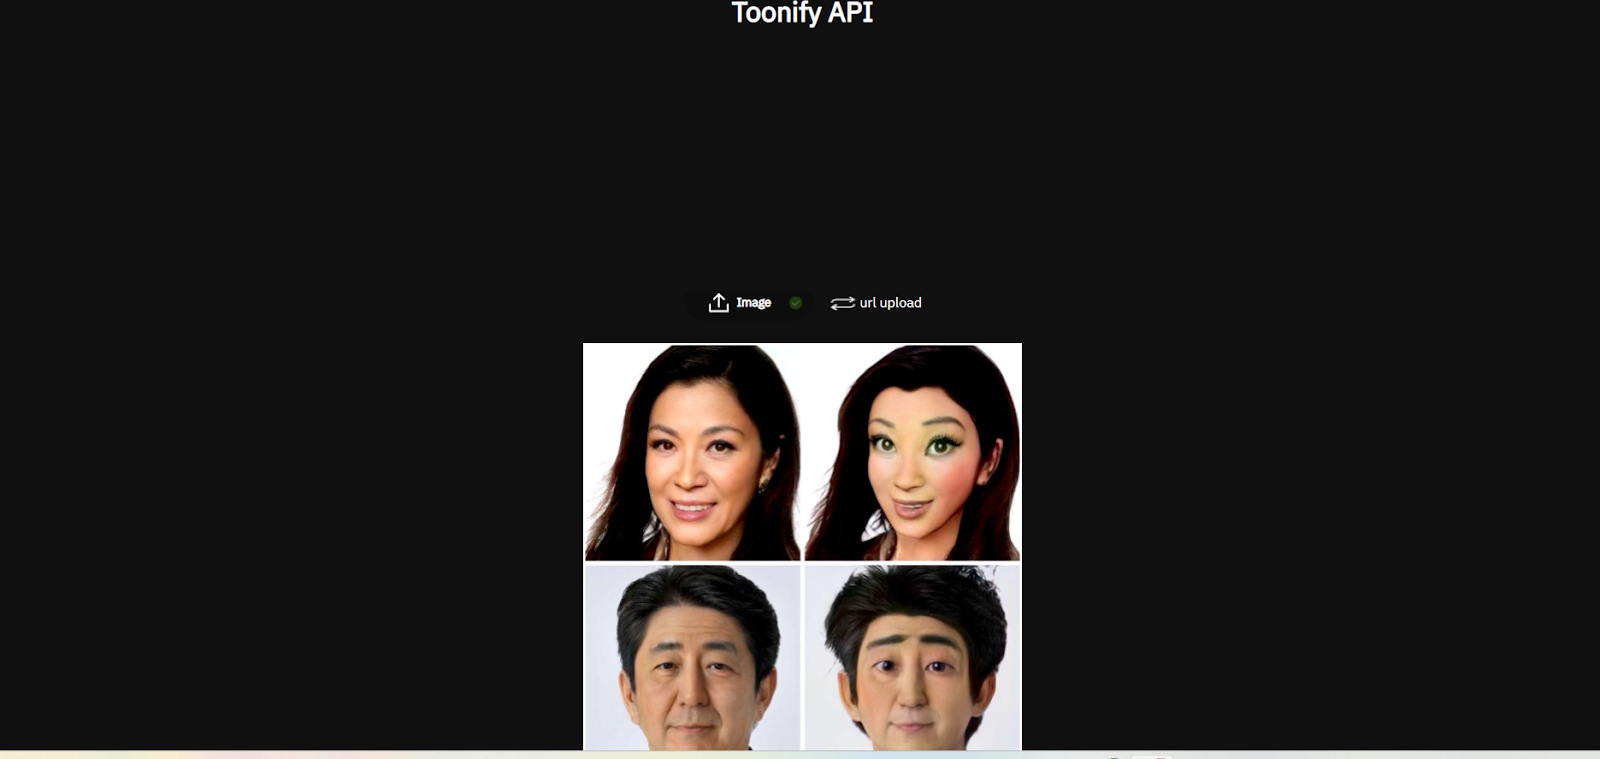 Toonify API